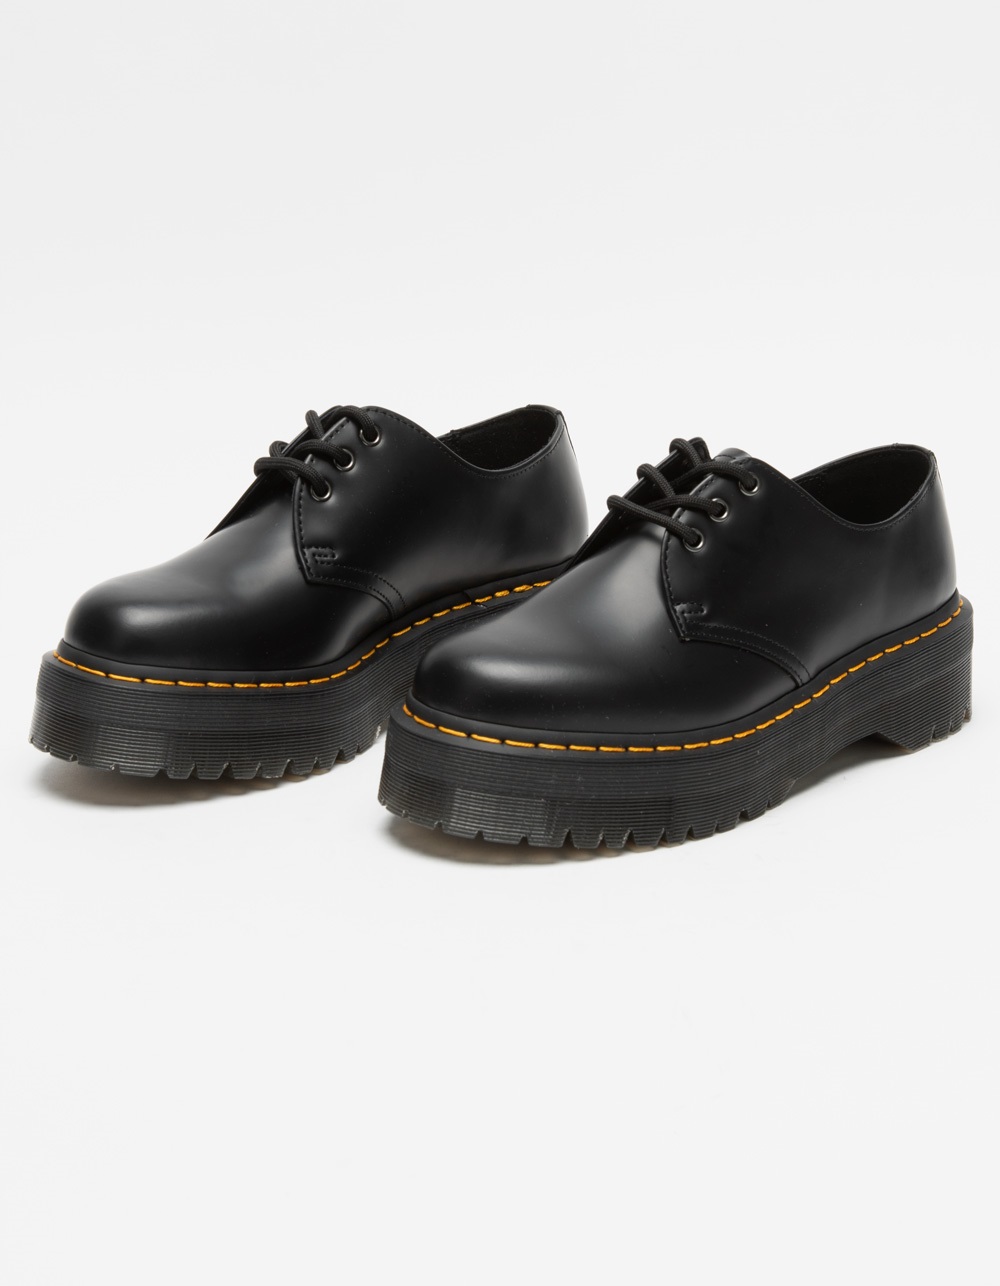 Dr. Martens 1461 Quad Smooth Leather Platform Shoes - Black - 8